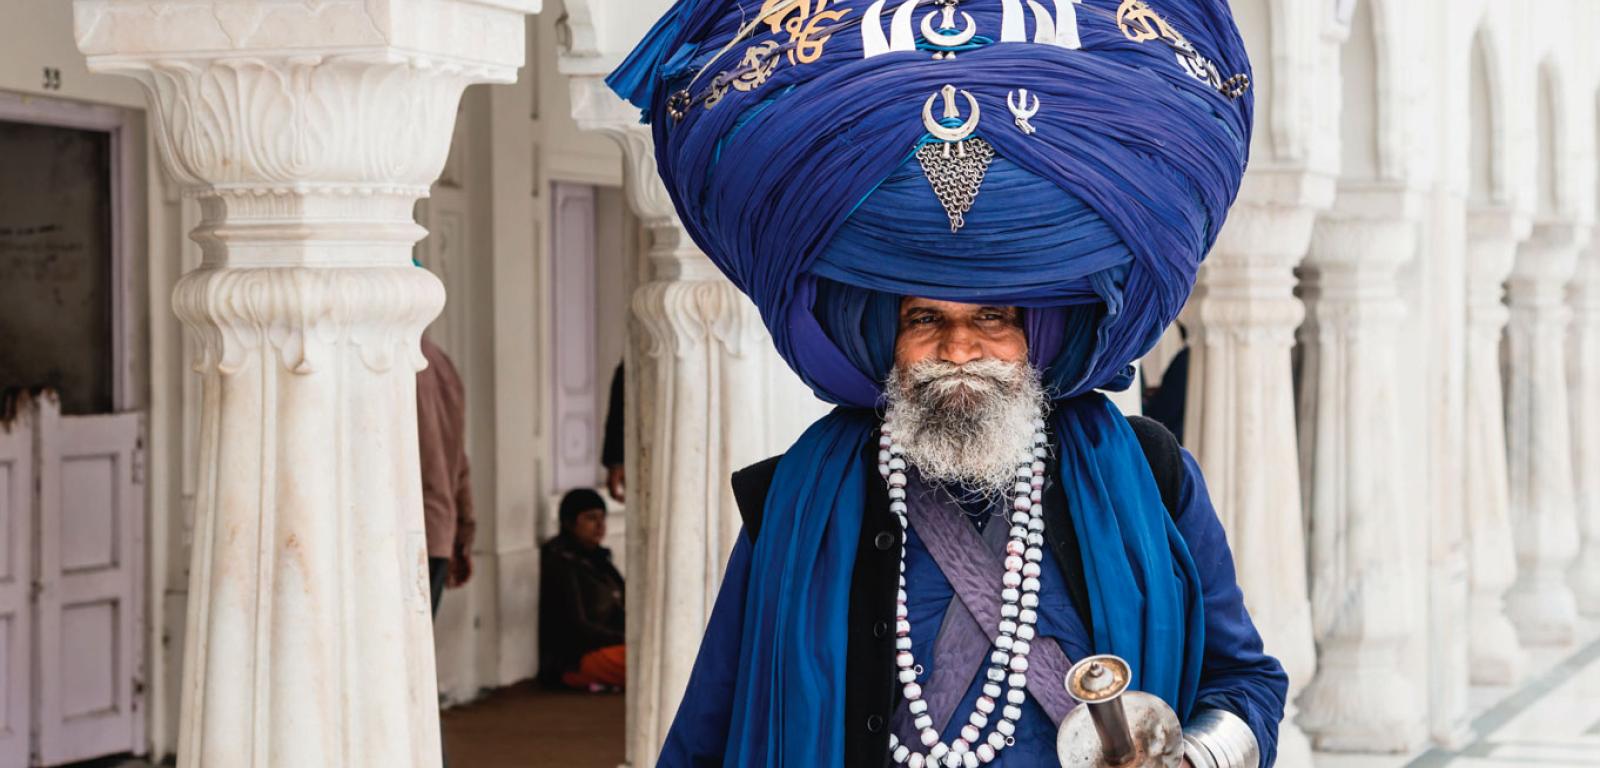 Sikh w gigantycznym turbanie w Złotej Świątyni w Amritsarze (Pendżab w Indiach), najważniejszym obiekcie kultu sikhów, gdzie przechowywany jest oryginał ich świętej księgi.